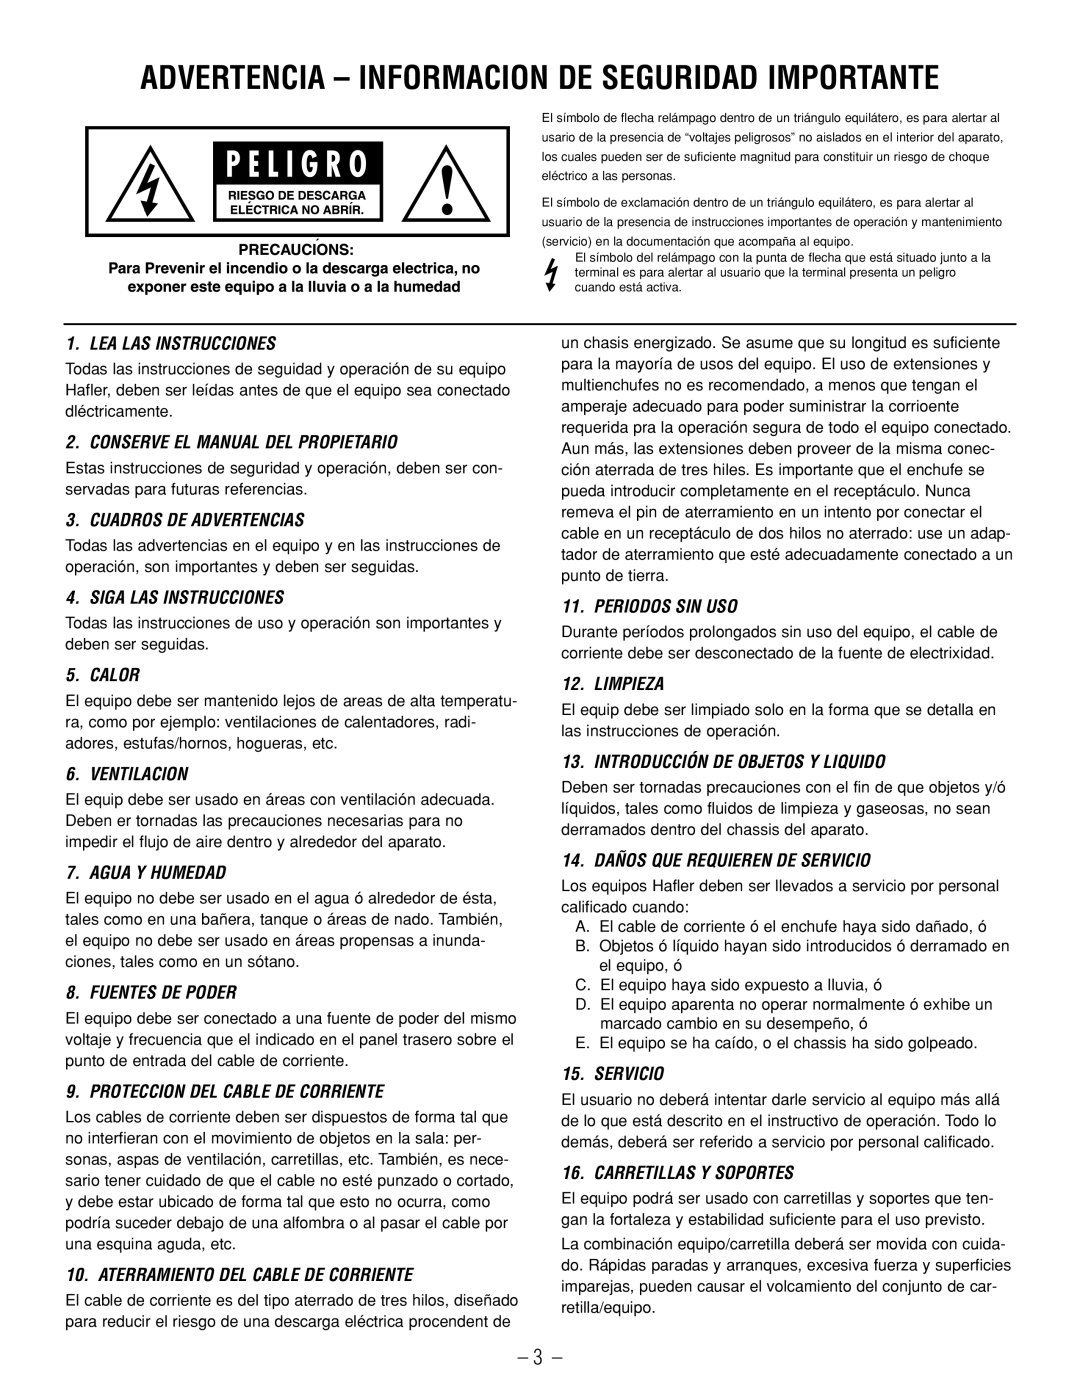 Hafler SR2800CE, SR2300CE owner manual Advertencia - Informacion De Seguridad Importante 